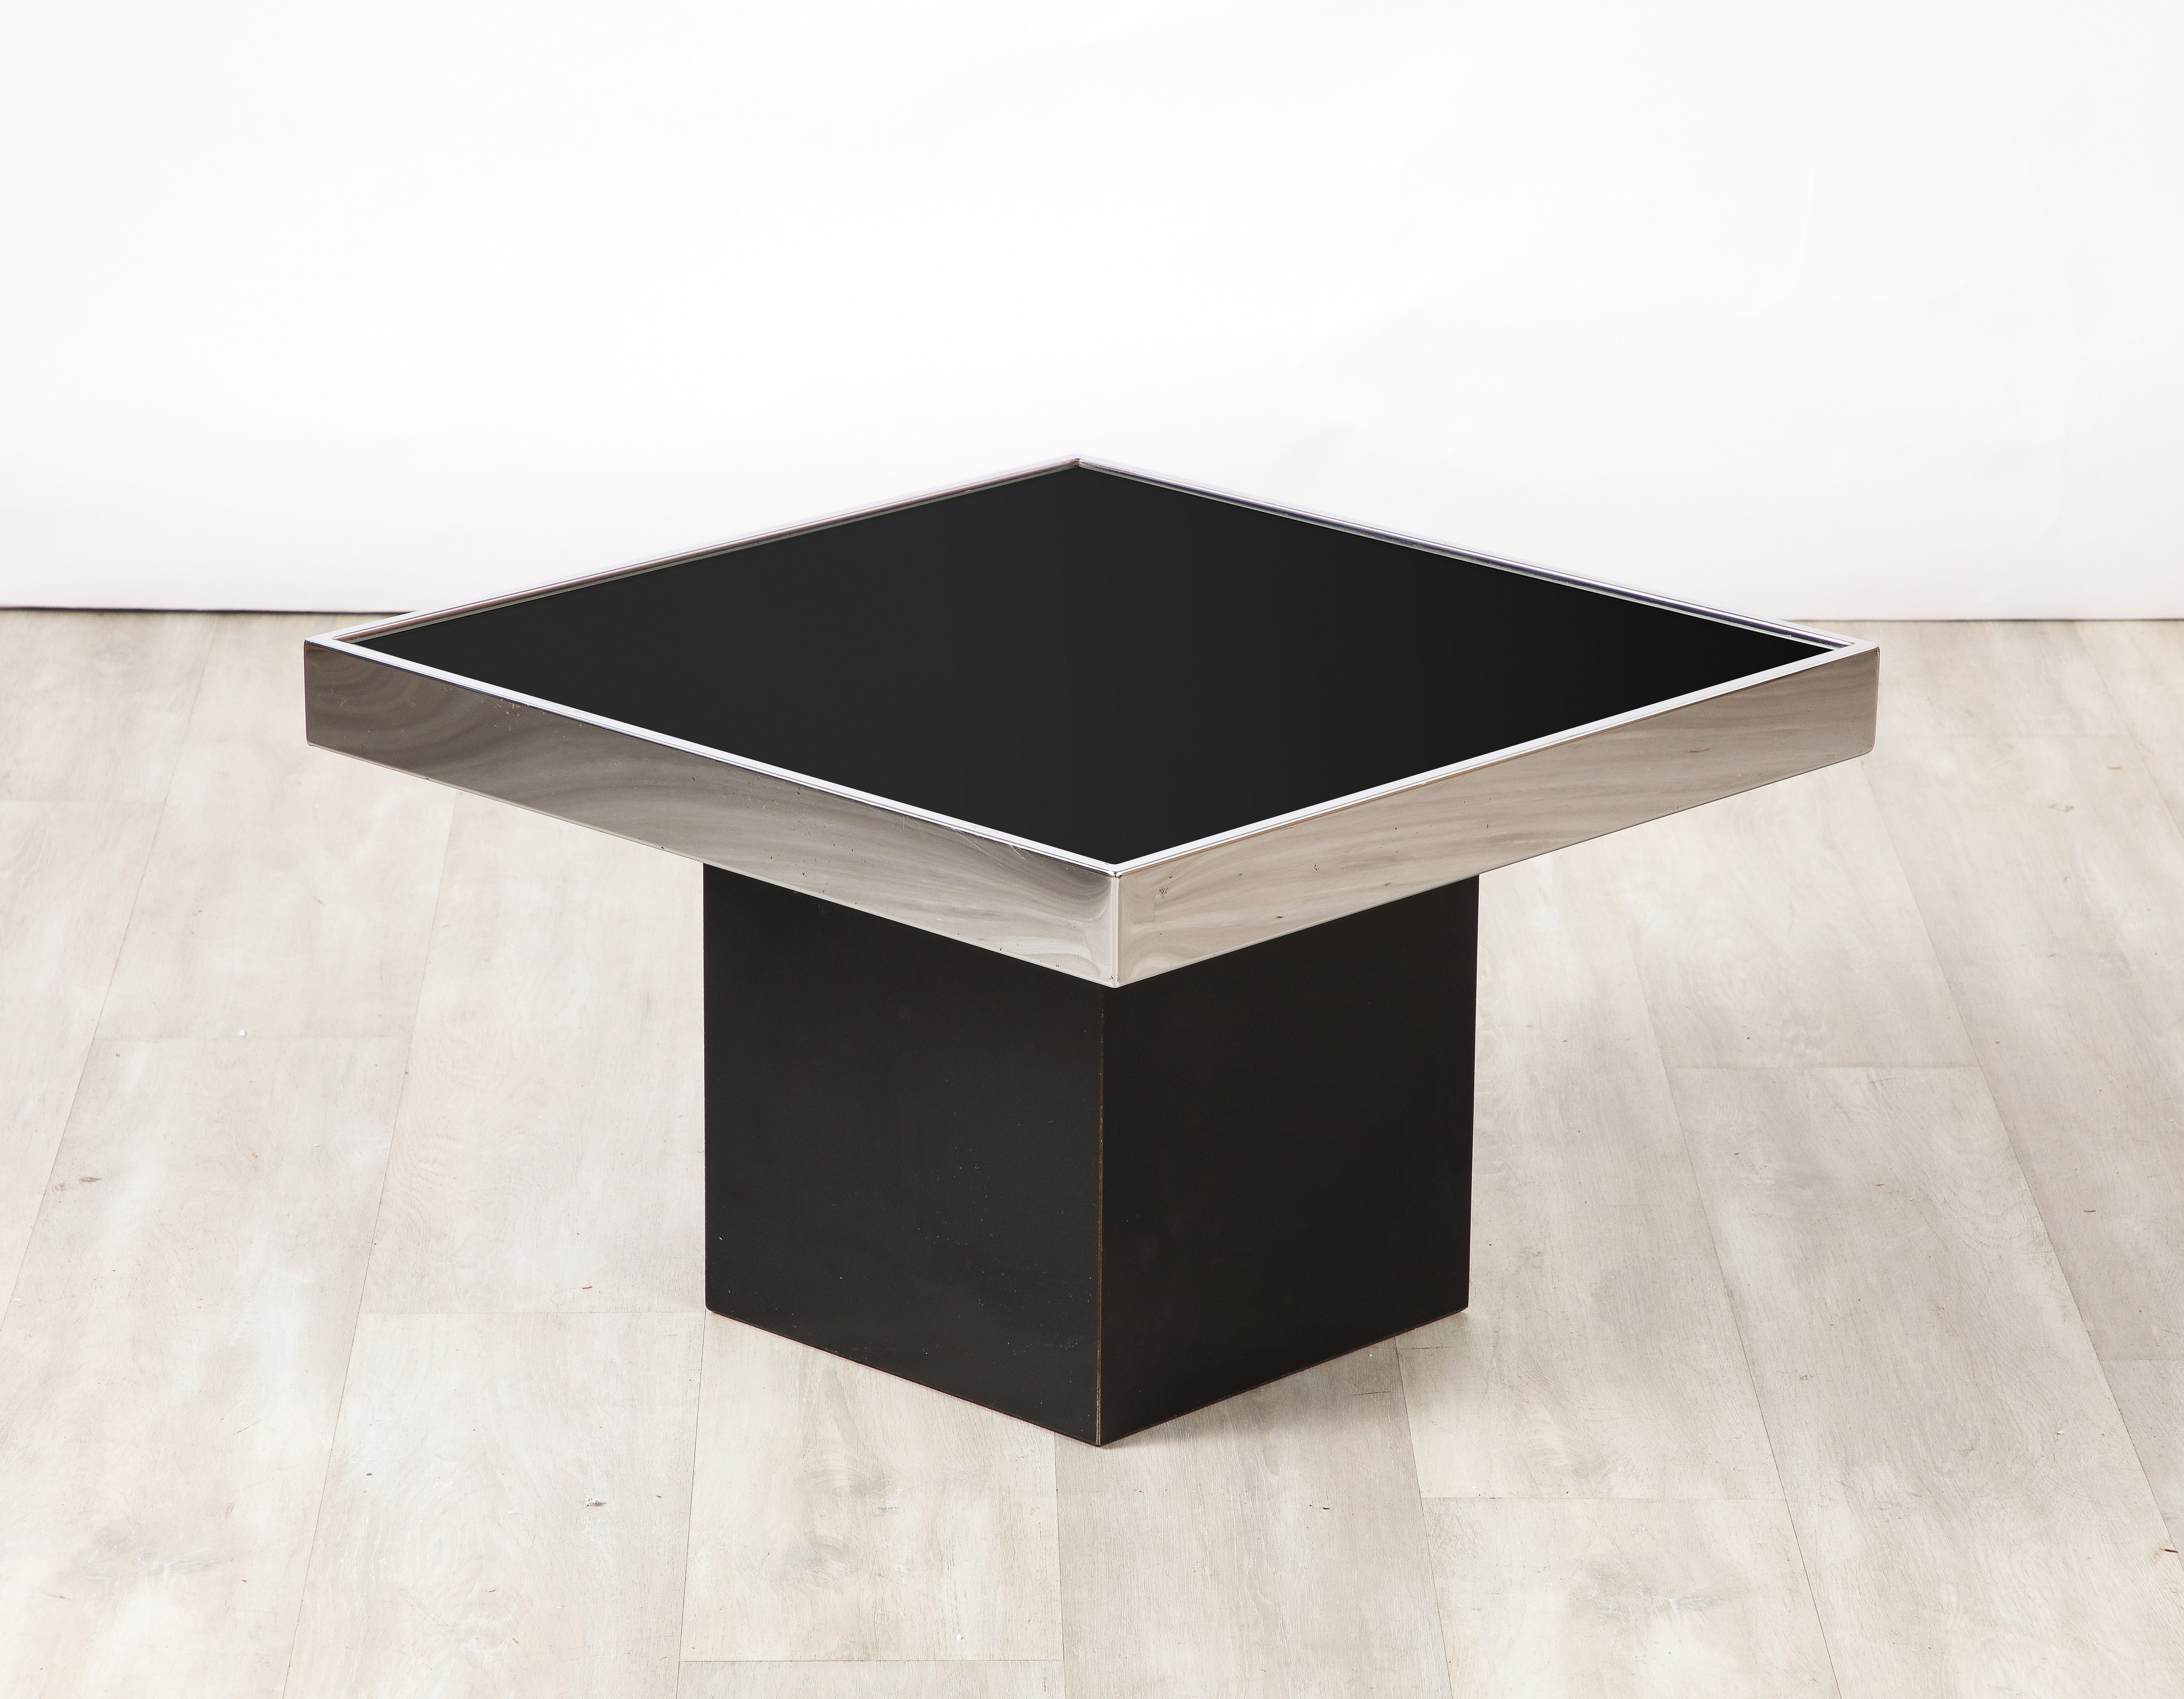 Table d'appoint carrée Willy Rizzo for Cidue, au design épuré et homogène.  La surface en verre noir chic est insérée dans le tablier carré chromé et repose sur un socle noir.  Un design très glamour et intemporel, très représentatif de l'esthétique